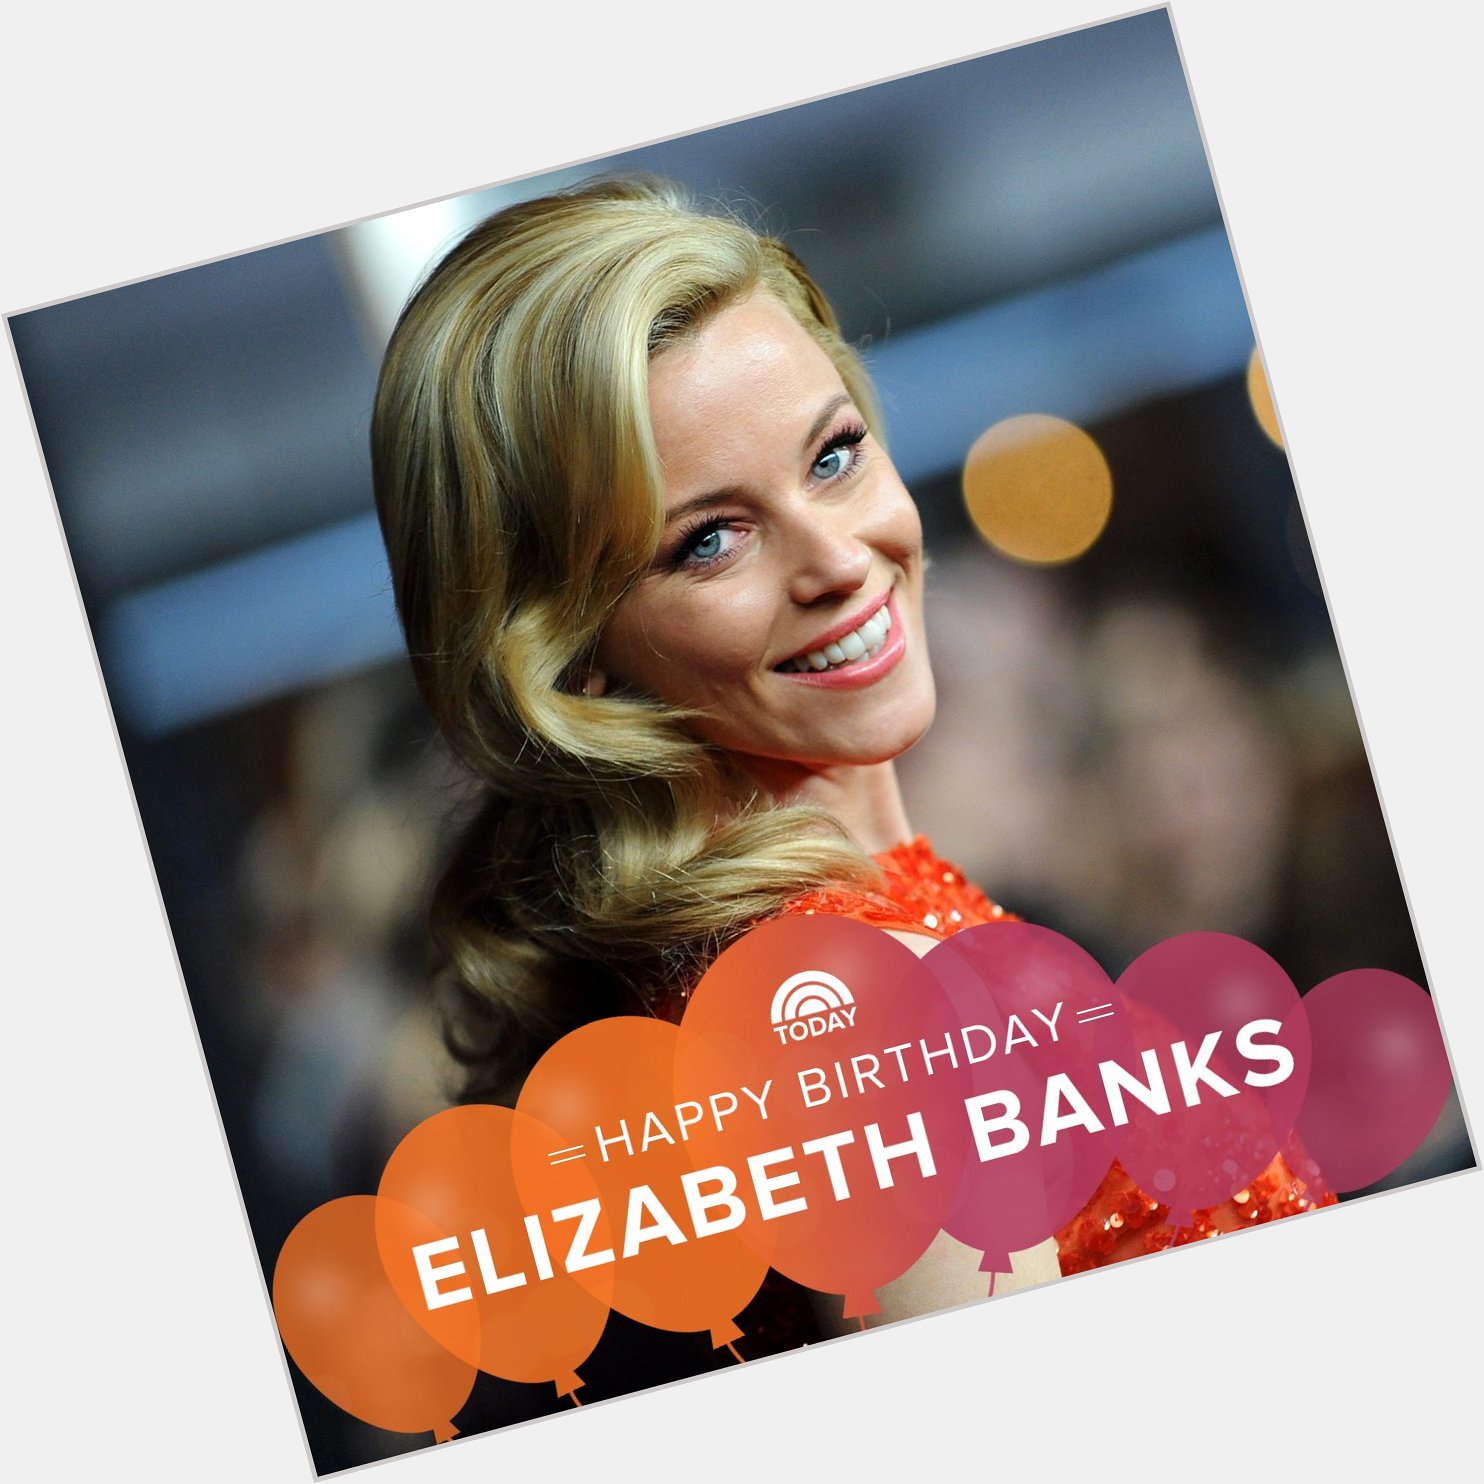 Happy Birthday, Elizabeth Banks!  